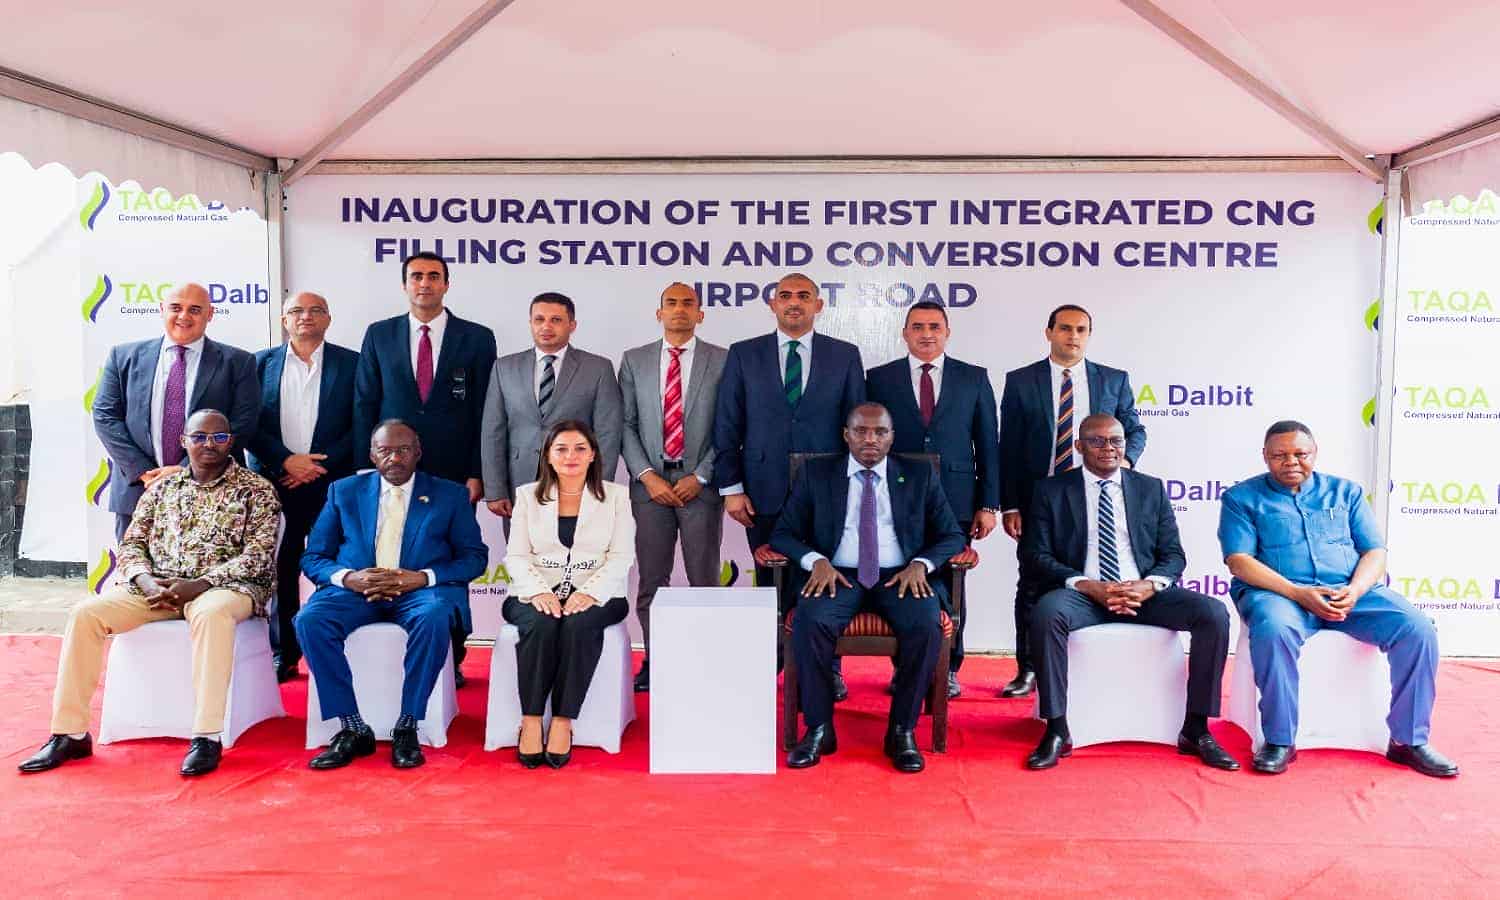 طاقة عربية تطلق أول محطة تموين متكاملة للغاز الطبيعي المضغوط في تنزانيا
